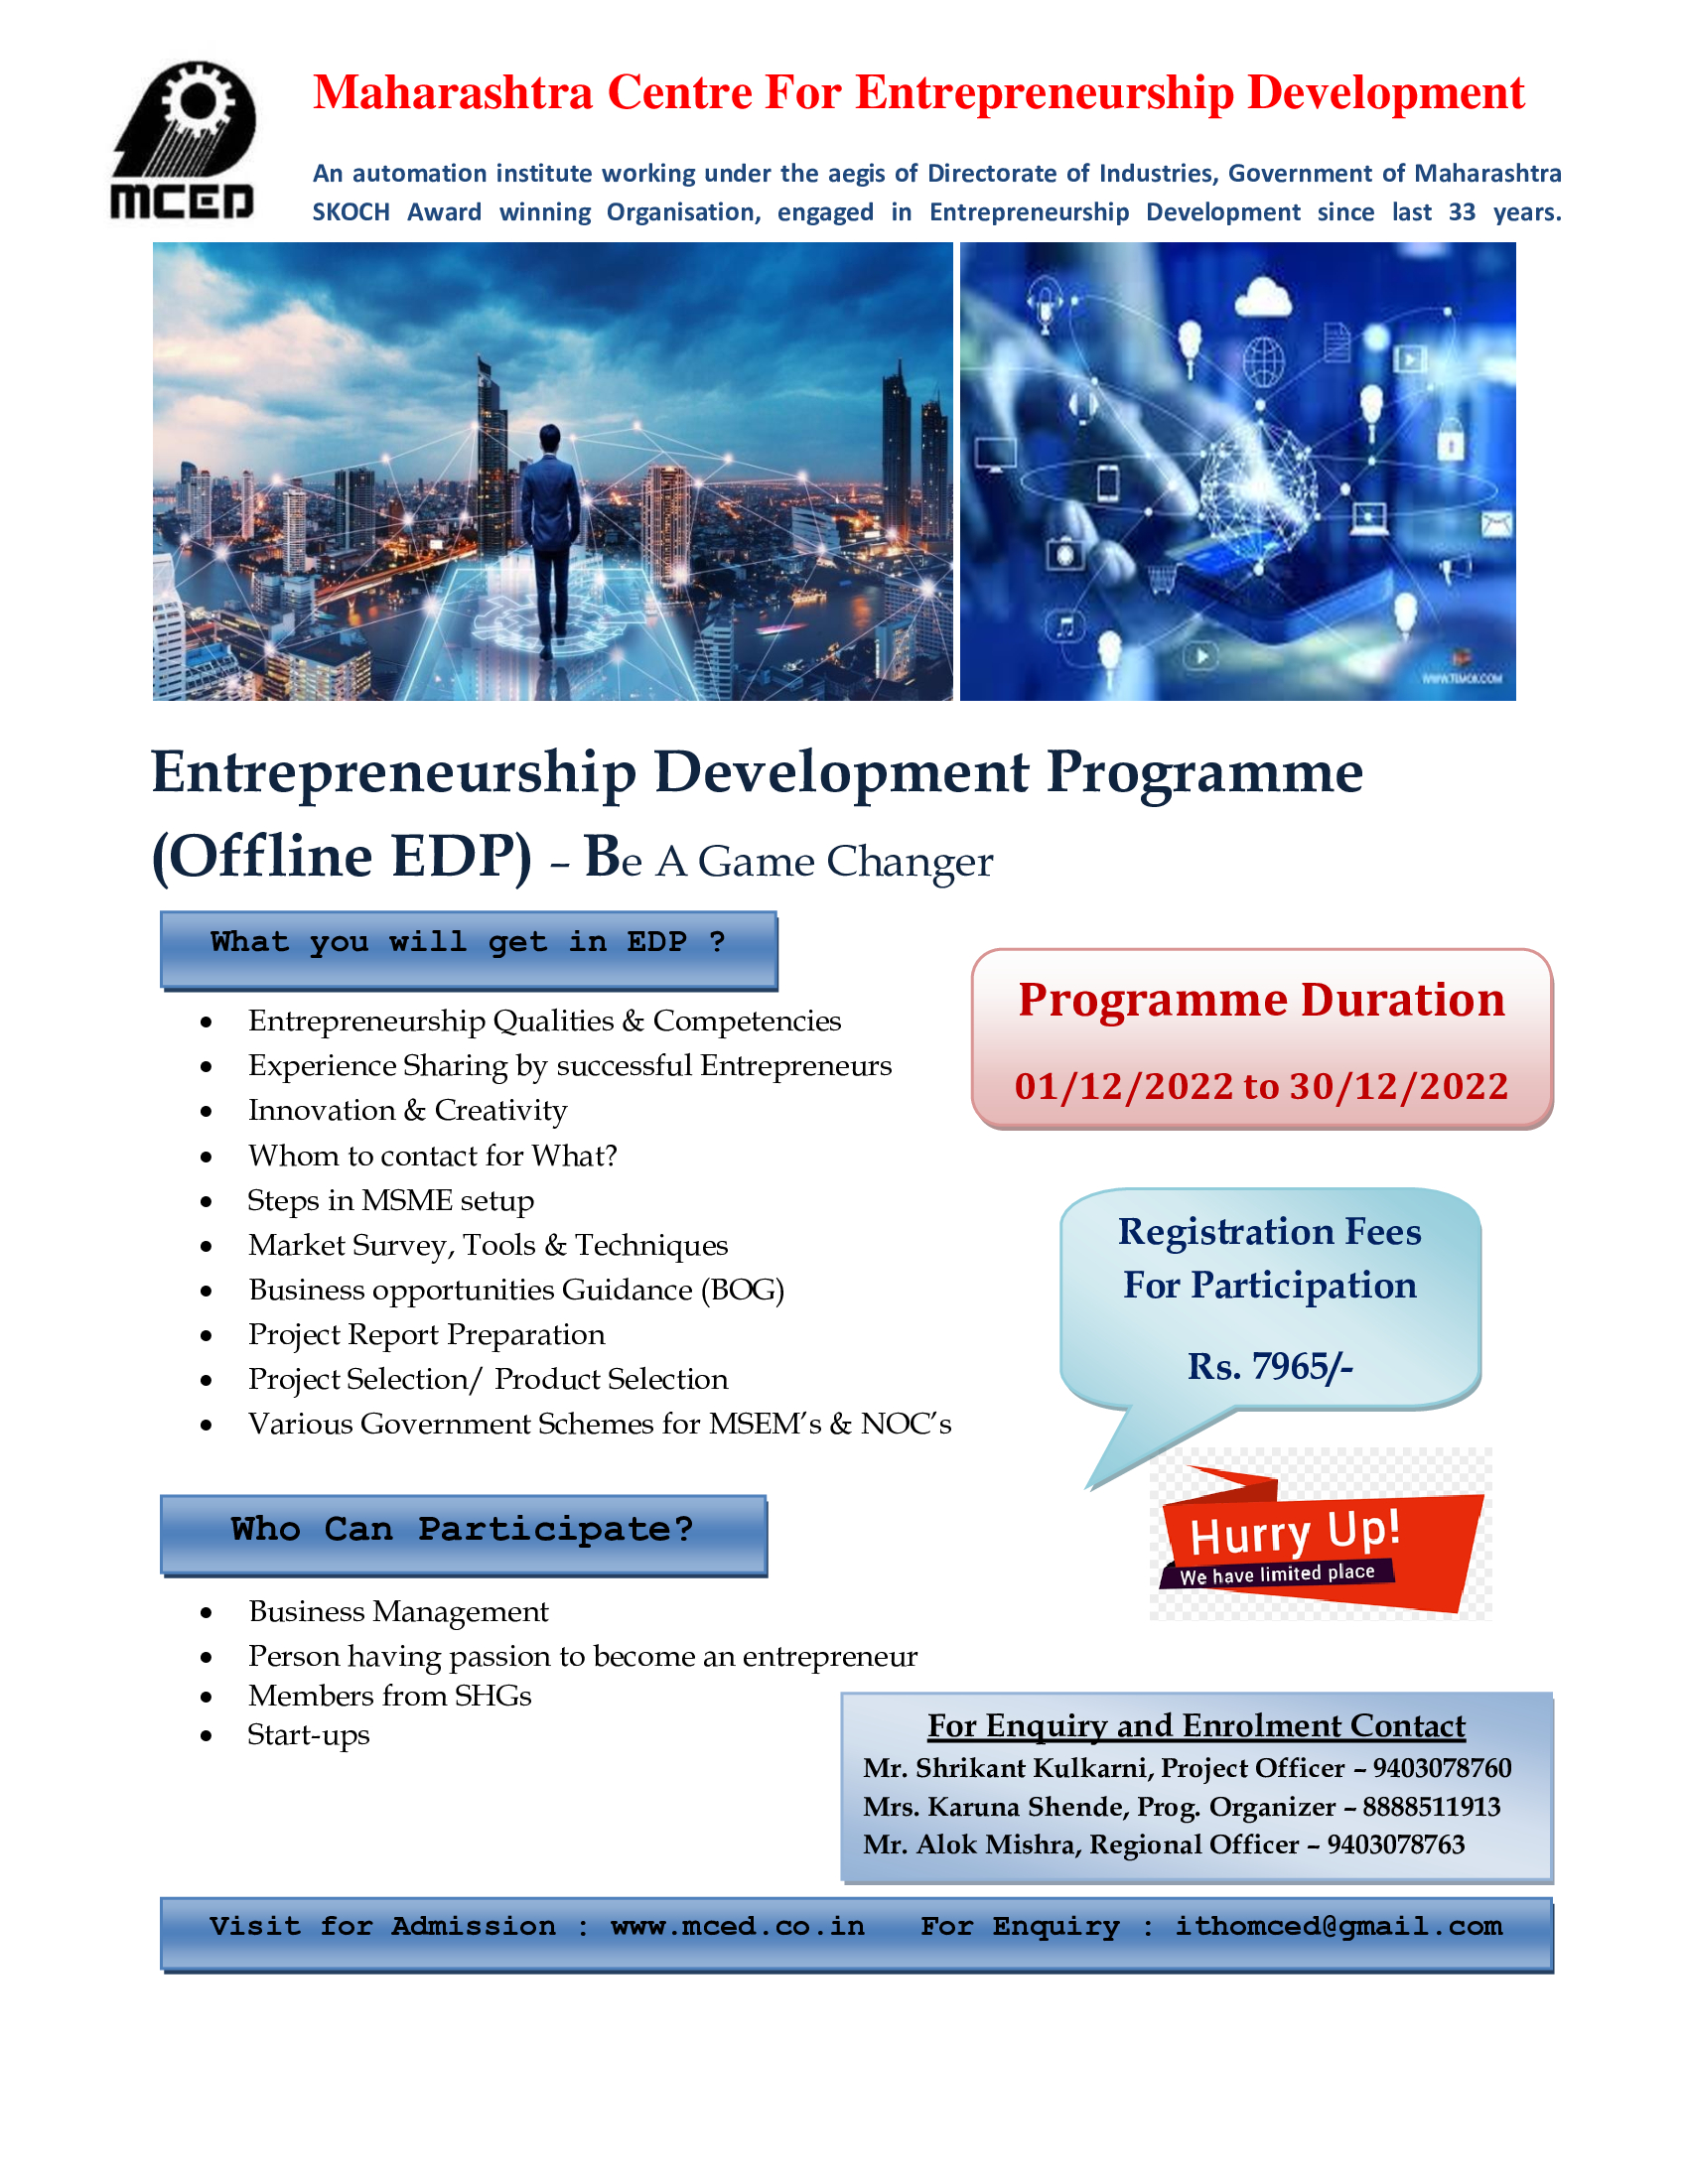 Offline Entrepreneurship Development Programme At Nagpur